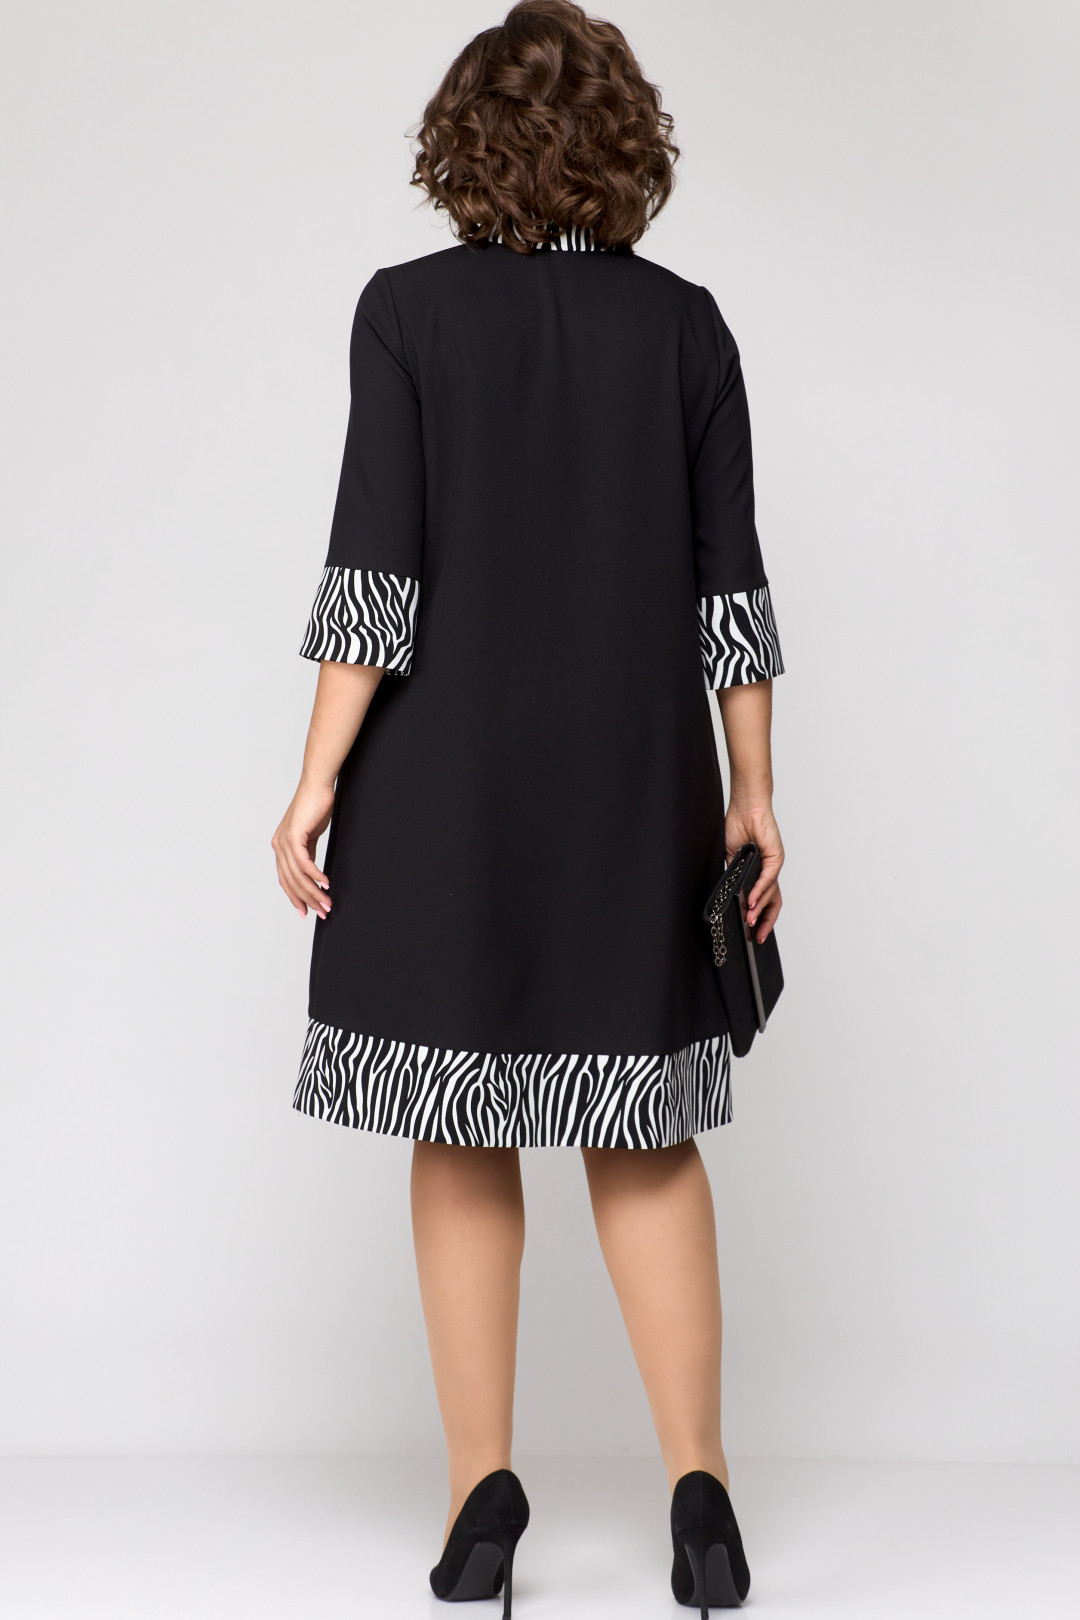 Платье EVA GRANT 7322 черный + принт зебра